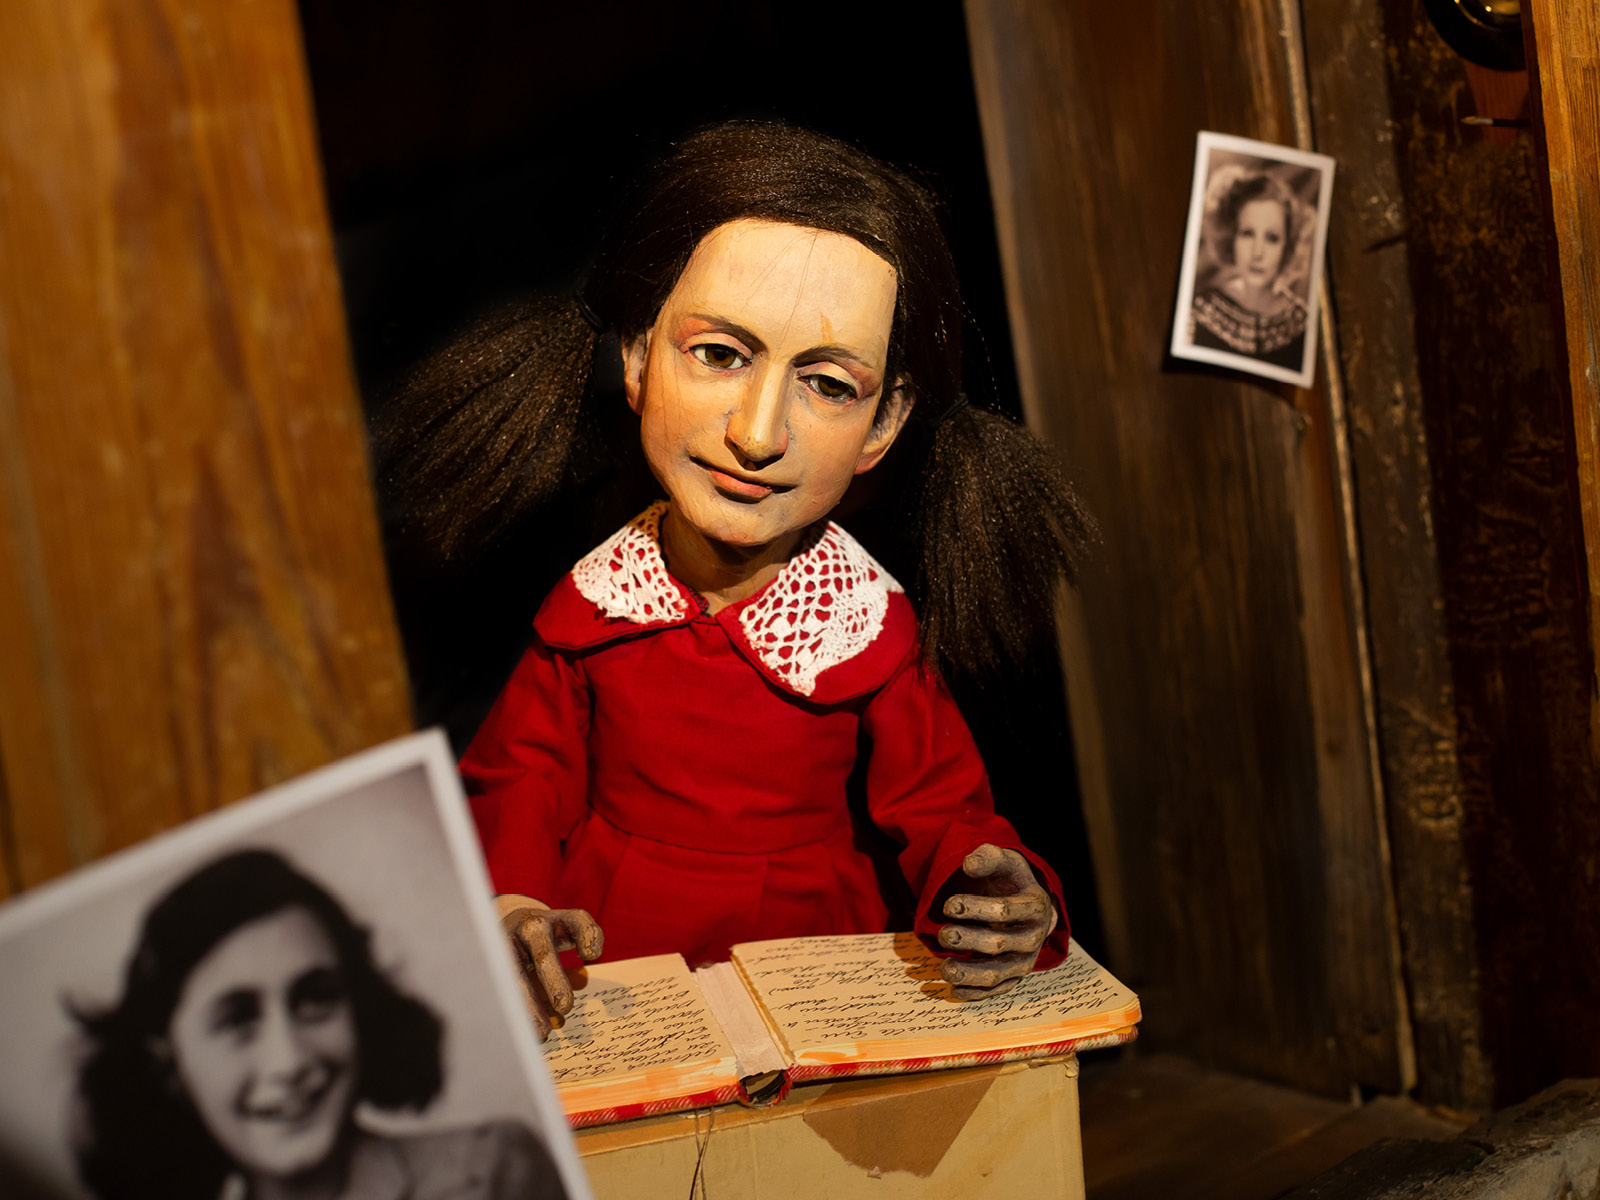 In rotem Kleid, mit Spitzenkragen und zwei Zöpfen rechts und links, sitzt die aus Holz gefertigte Puppe von Anne Frank an einem Tisch. Ihr Tagebuch ist offen vor ihr ausgebreitet. Im Vordergrund ist unscharf eine Fotografie der echten Anne Frank zu sehen.